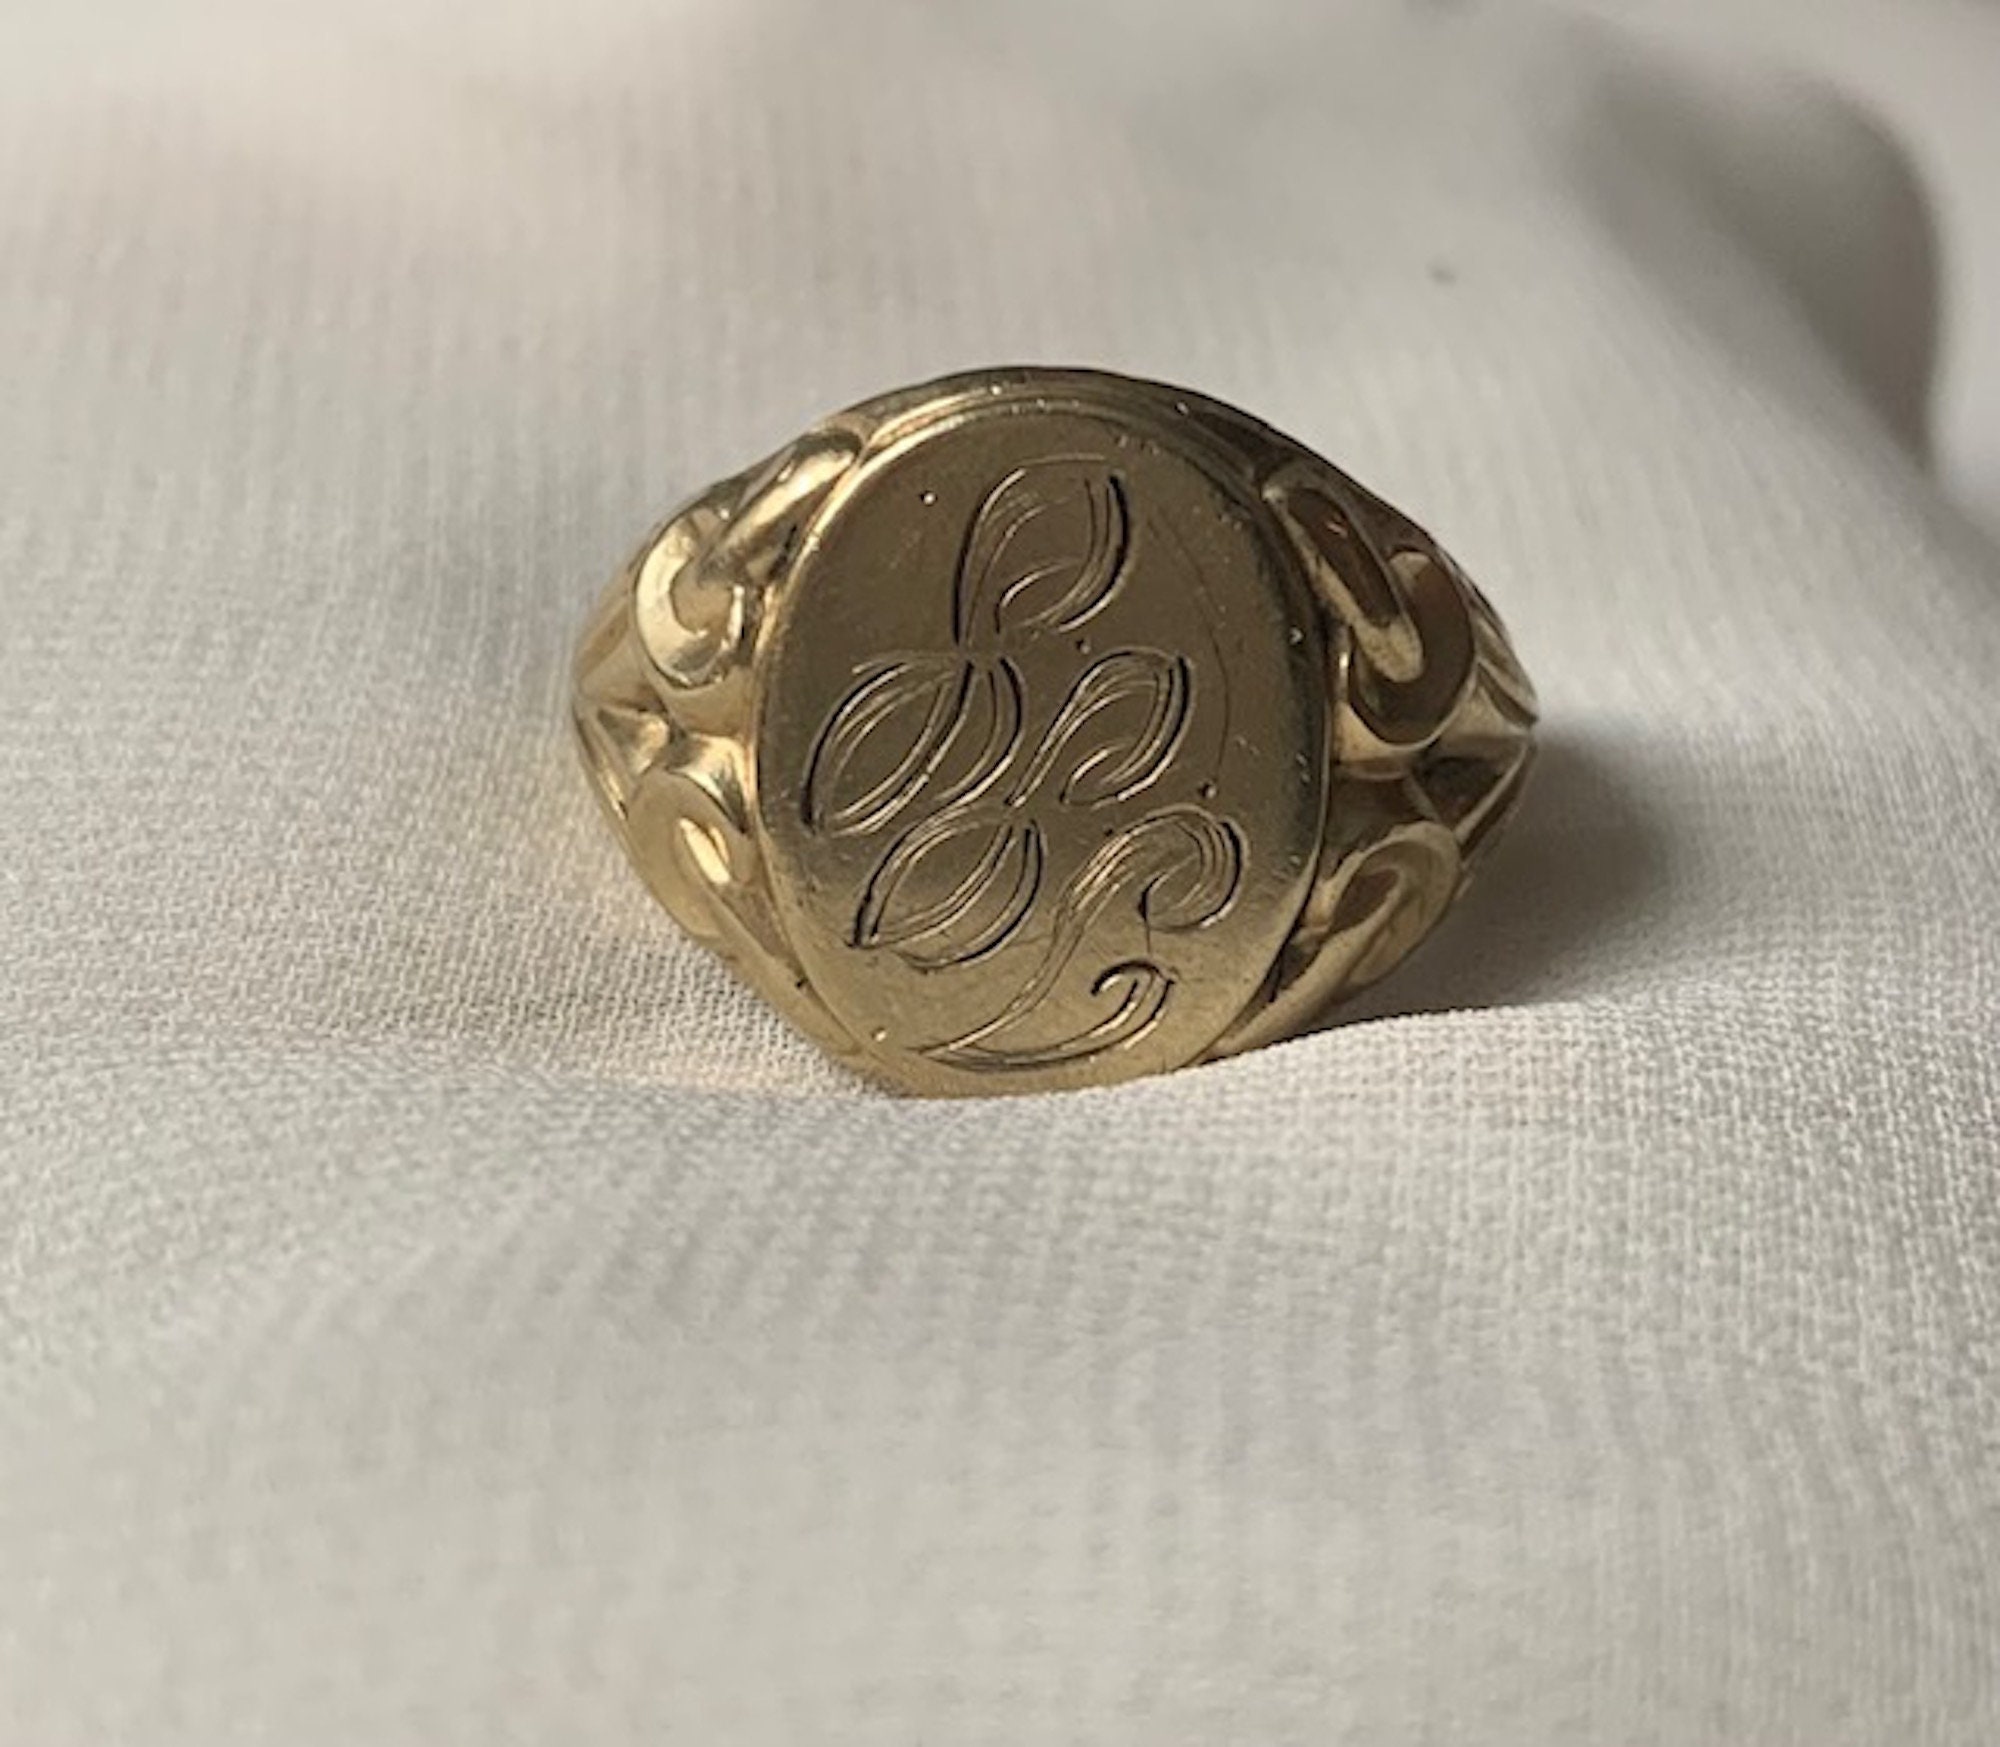 Antique 10k Gold Signet Ring Engraved Initials Monogram J.G. -  Israel